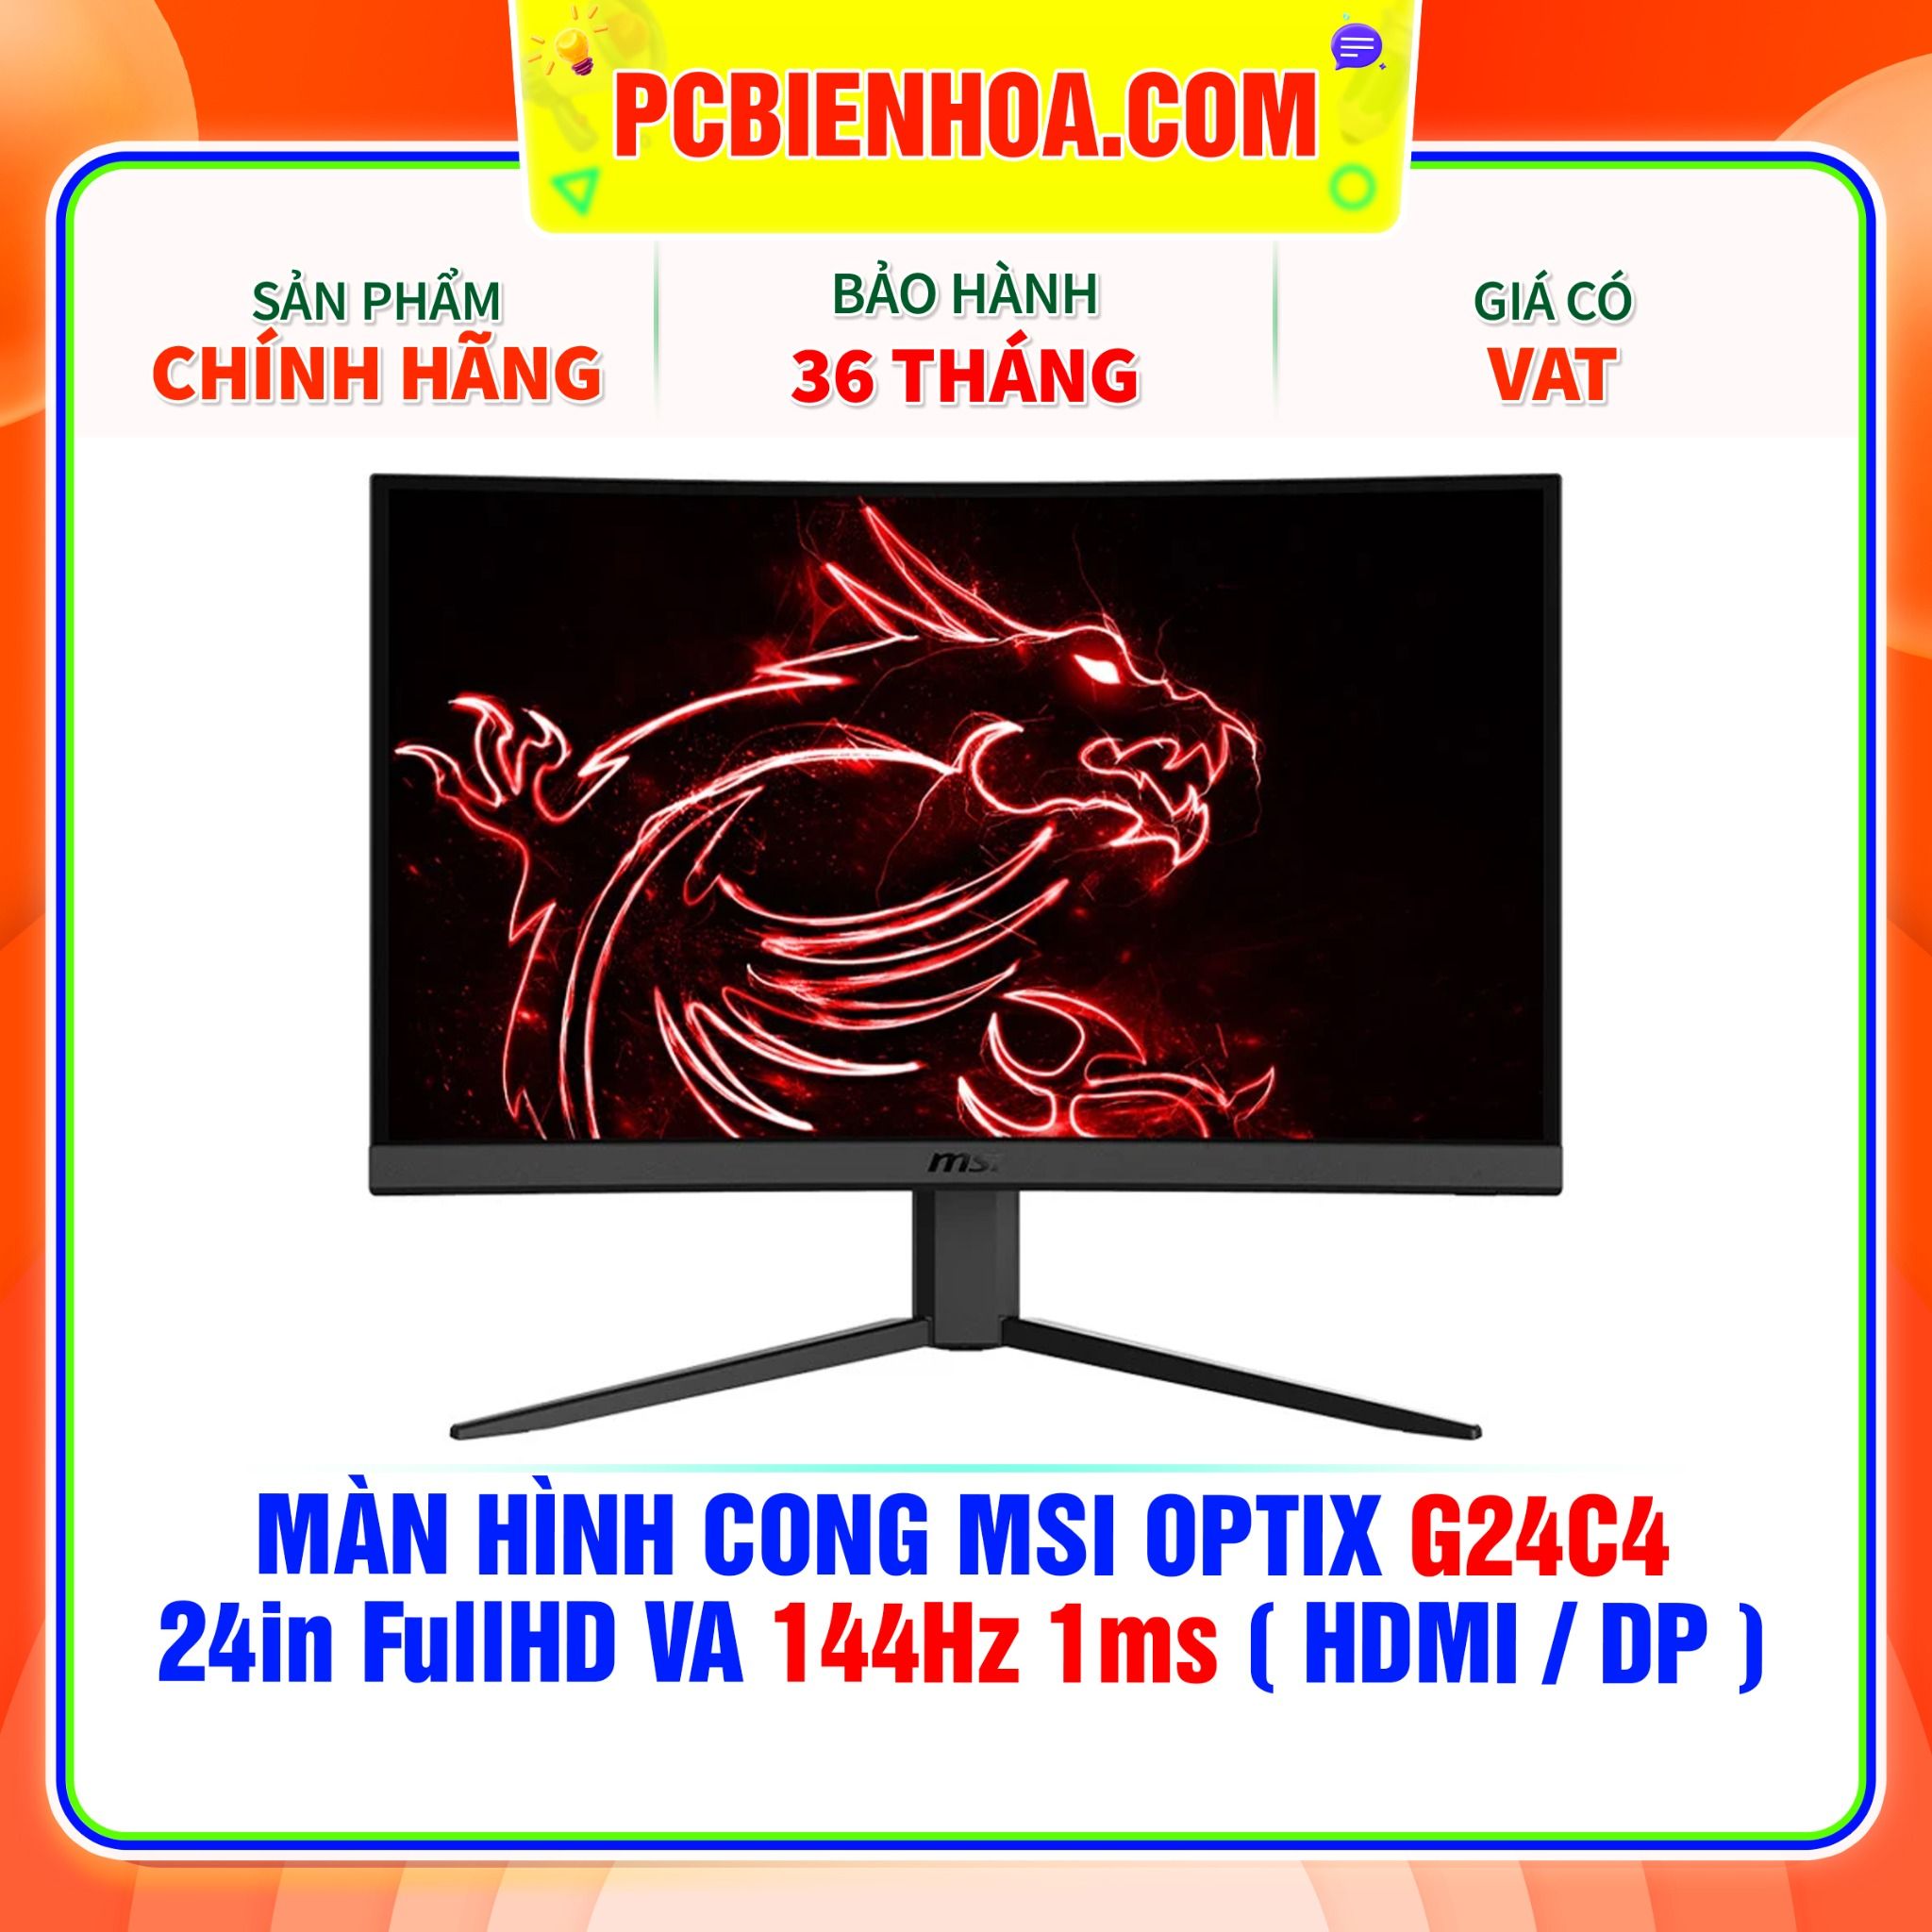  MÀN HÌNH CONG MSI OPTIX G24C4 24in FullHD VA 144Hz 1ms ( HDMI / DP ) 